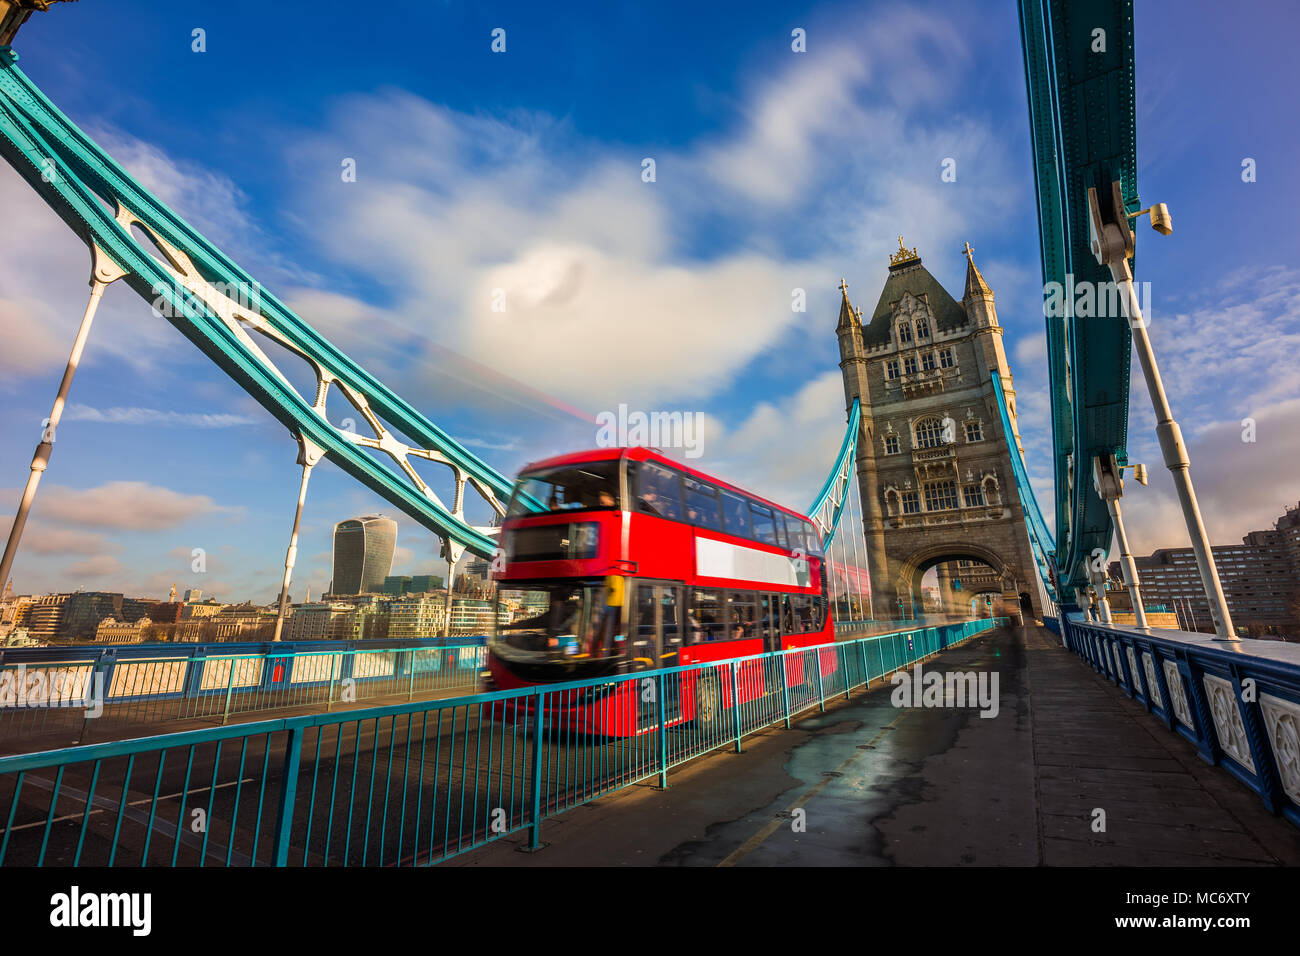 Londres, Angleterre - rouge iconique double-decker bus dans motion sur la célèbre Tower Bridge avec skyscraper de quartier des banques à l'arrière-plan. Ciel bleu et nuages Banque D'Images